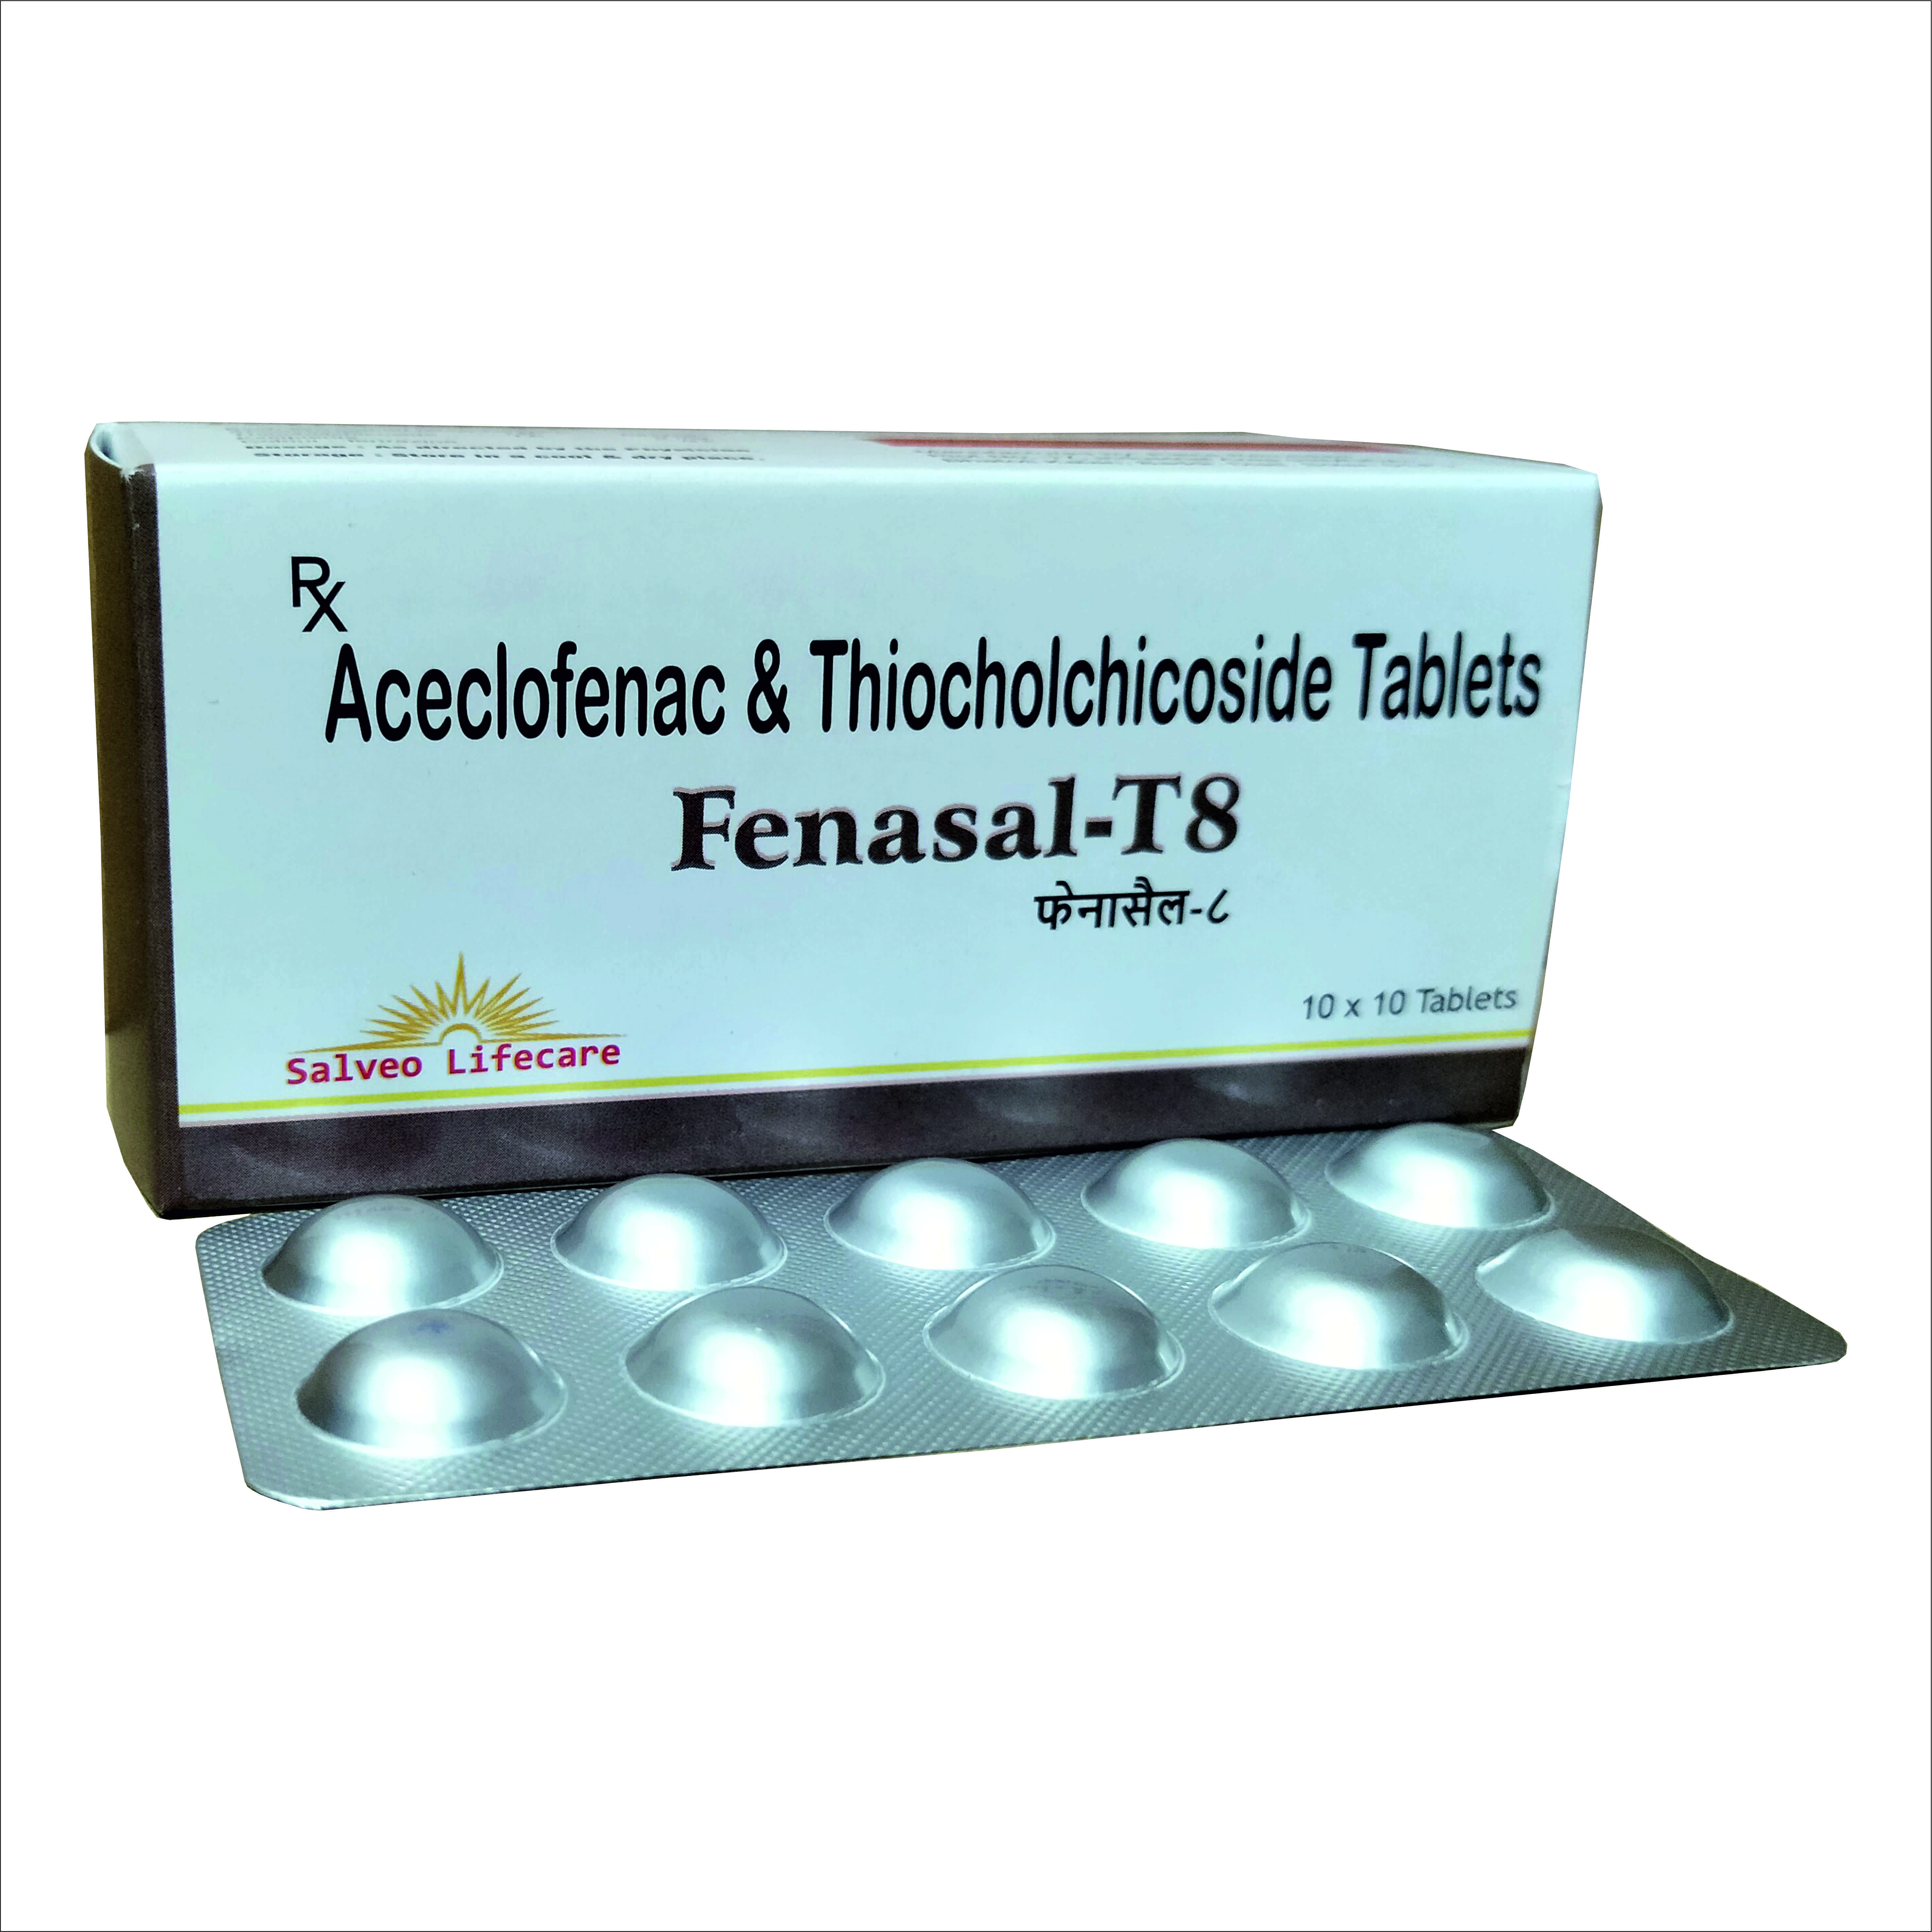 aceclofenac 100 mg, thiocholchicoside 8 mg